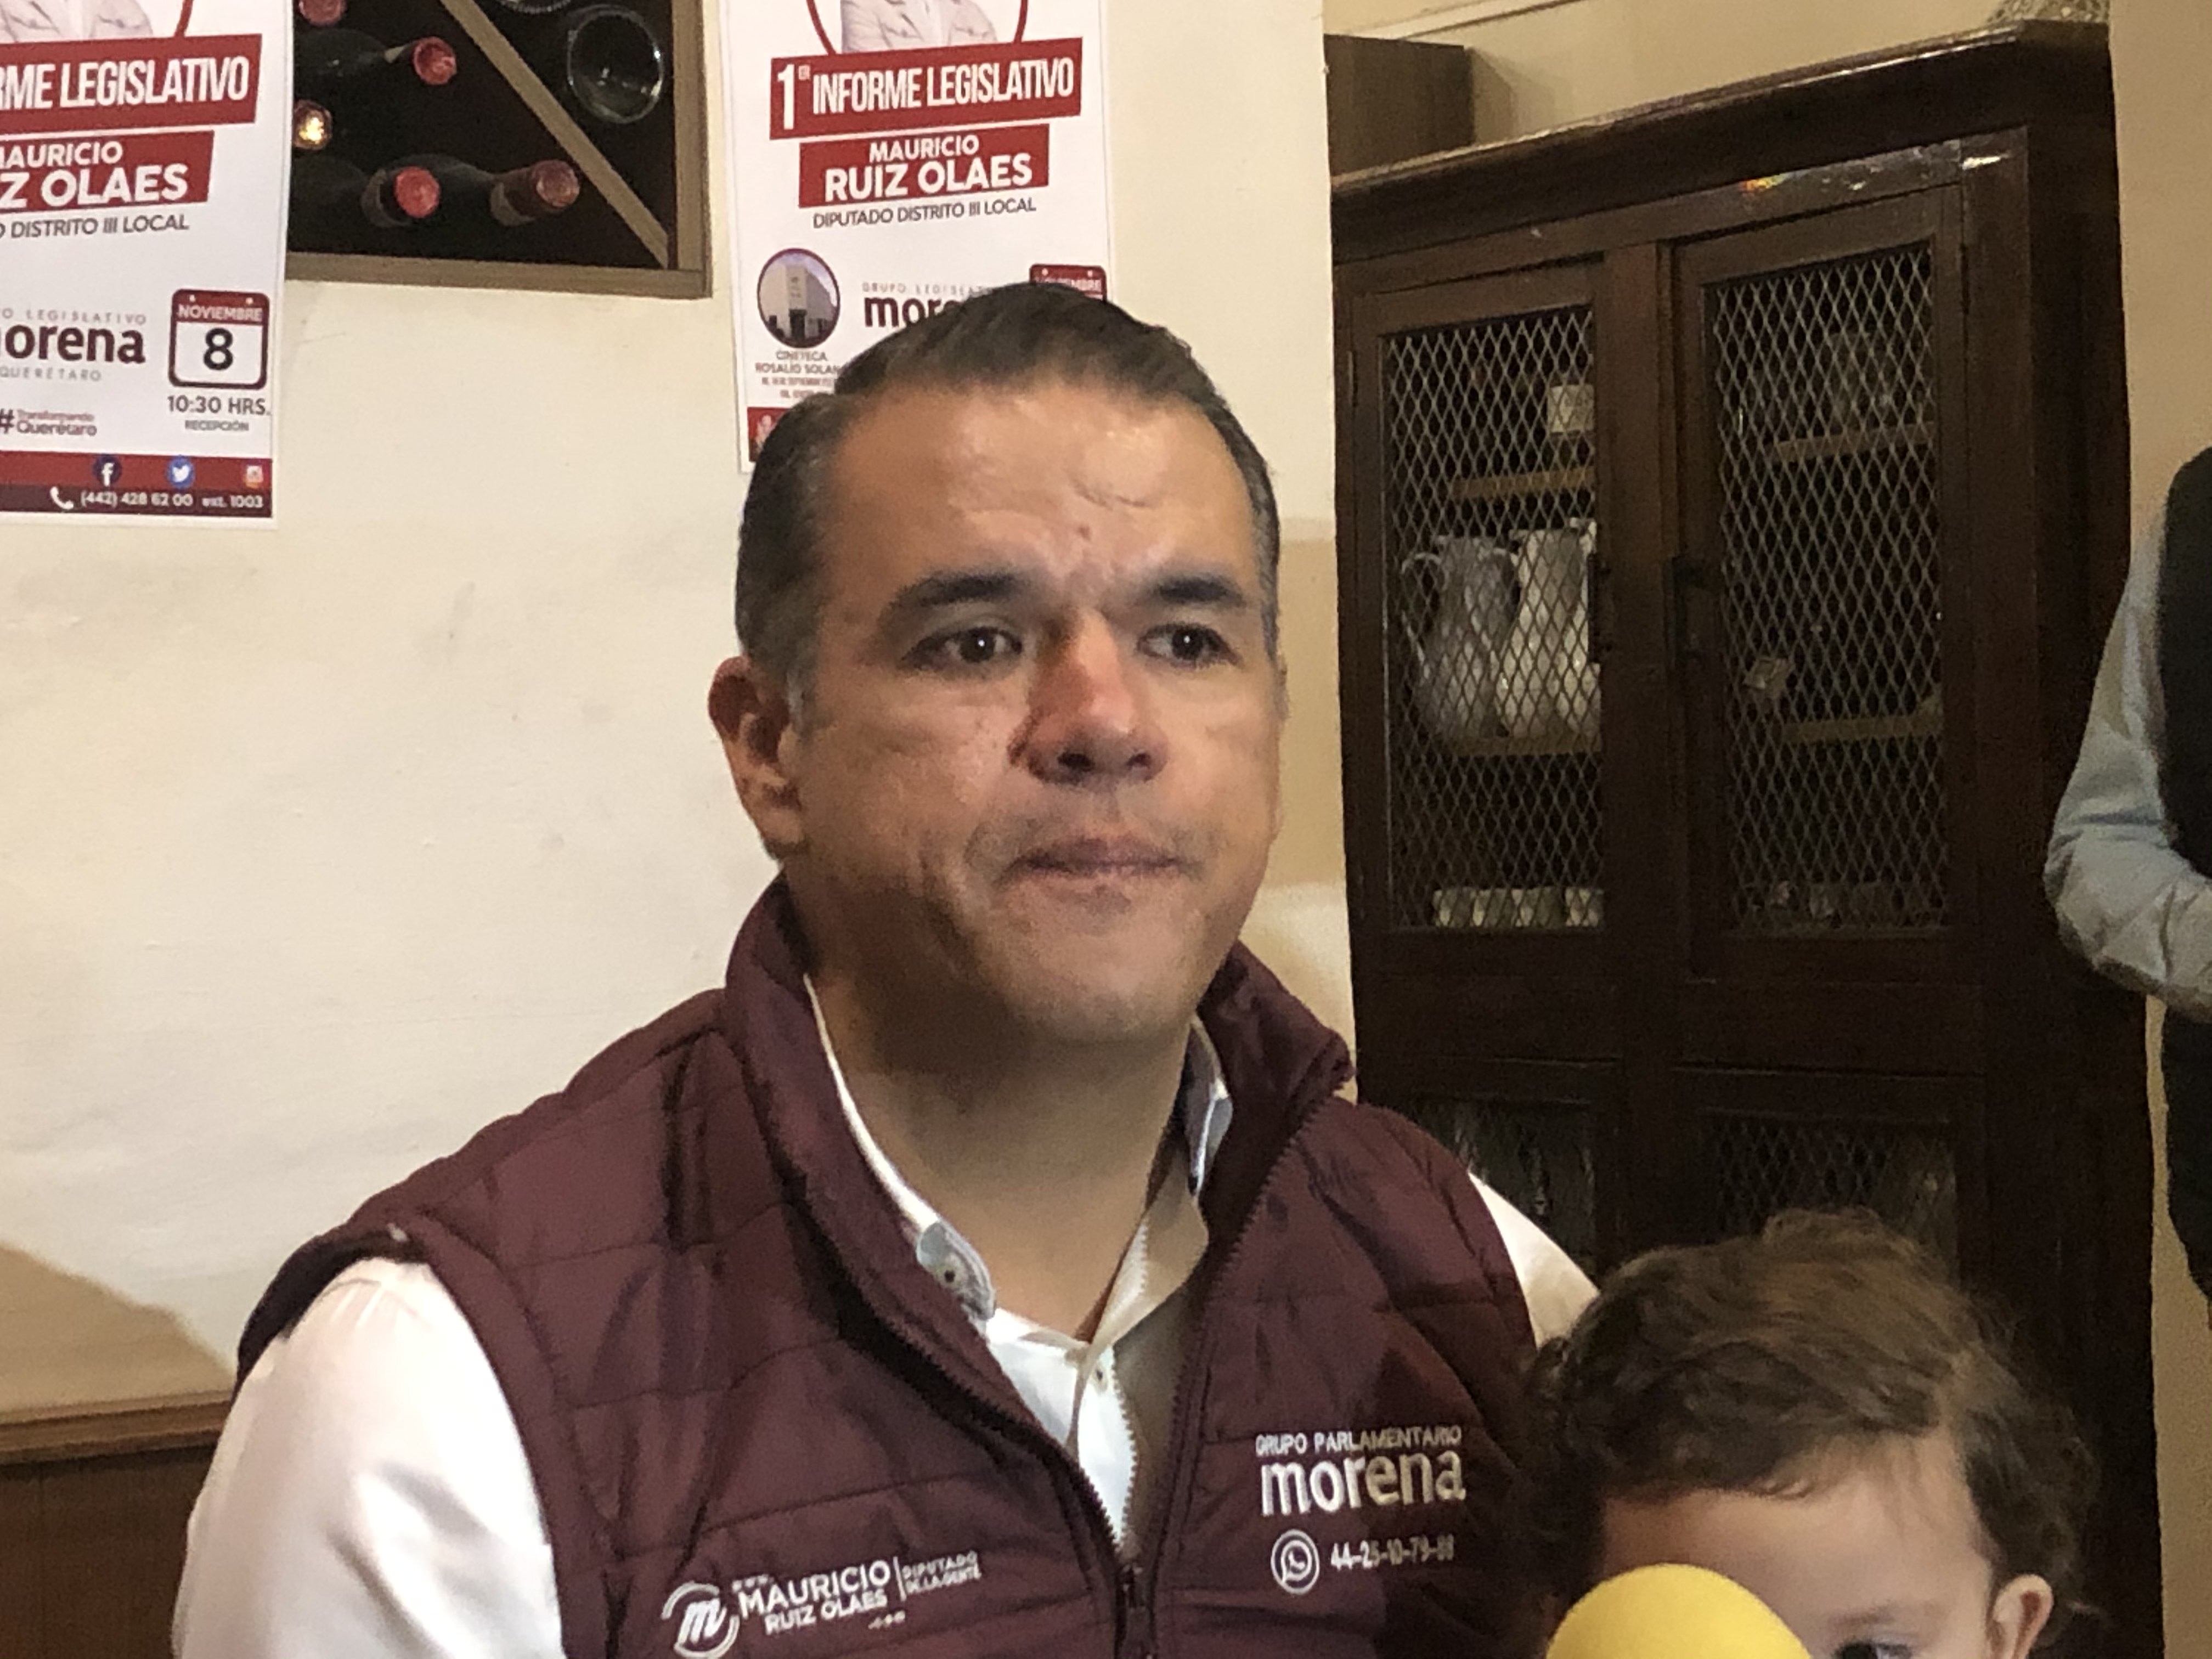  Presenta Ruiz Olaes denuncia contra Congreso Local, lo acusa de bloquear sus iniciativas